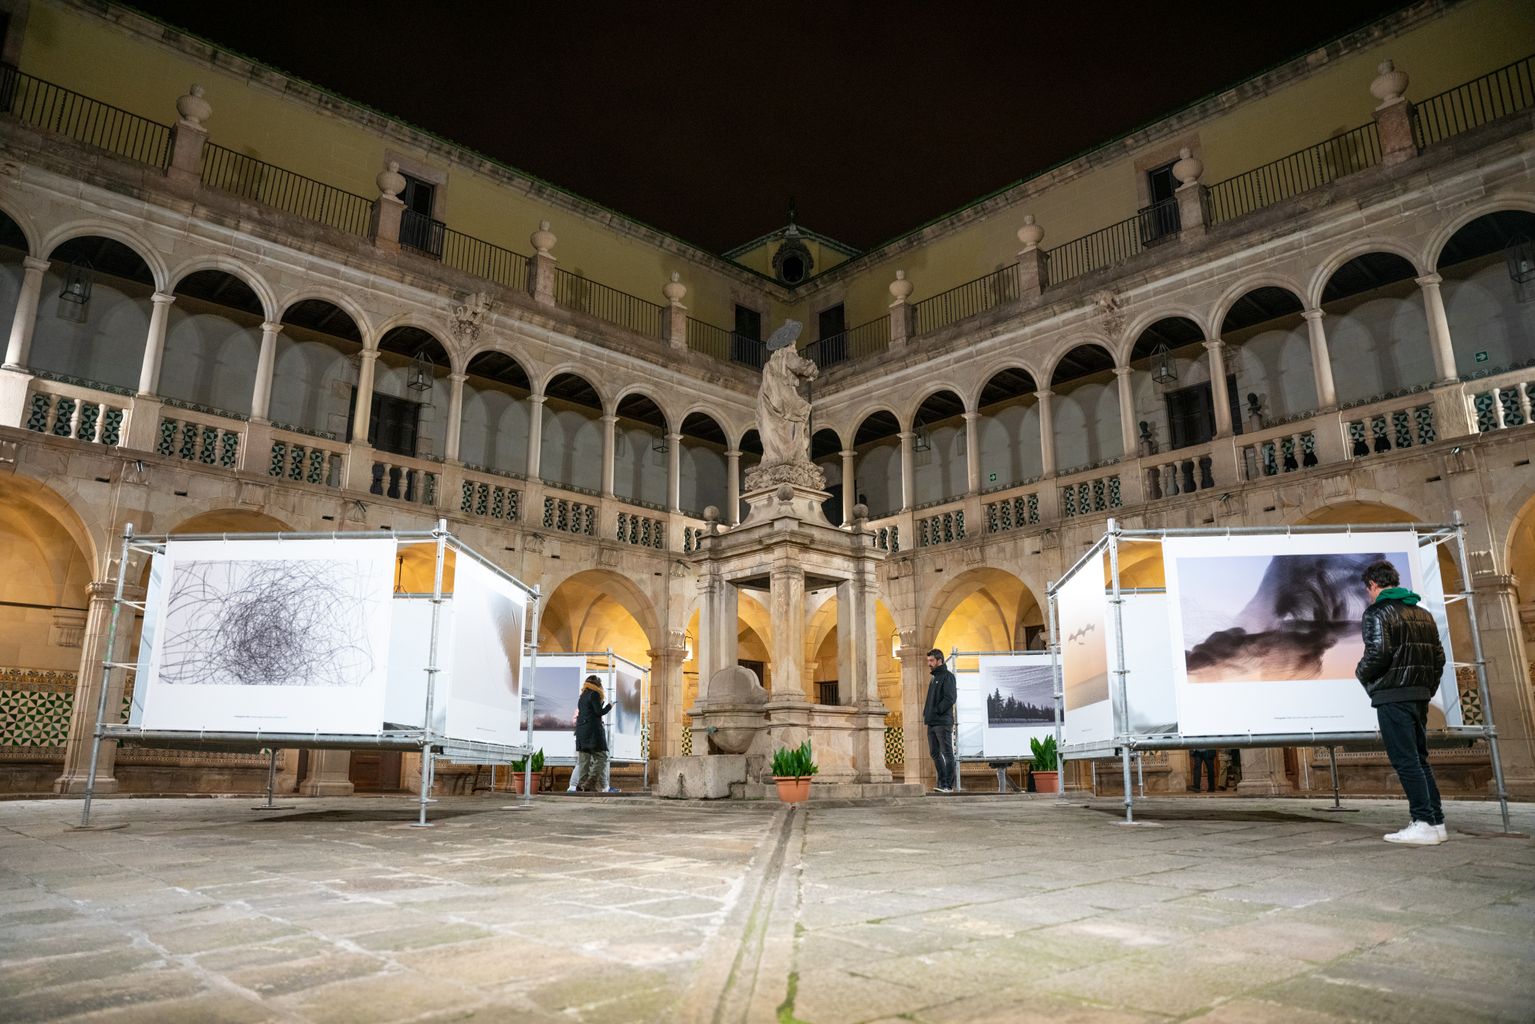 Pla general del pati de l’Institut d’Estudis Catalans durant l’exposició «Ornitographies», dins de la Biennal Ciutat i Ciència.